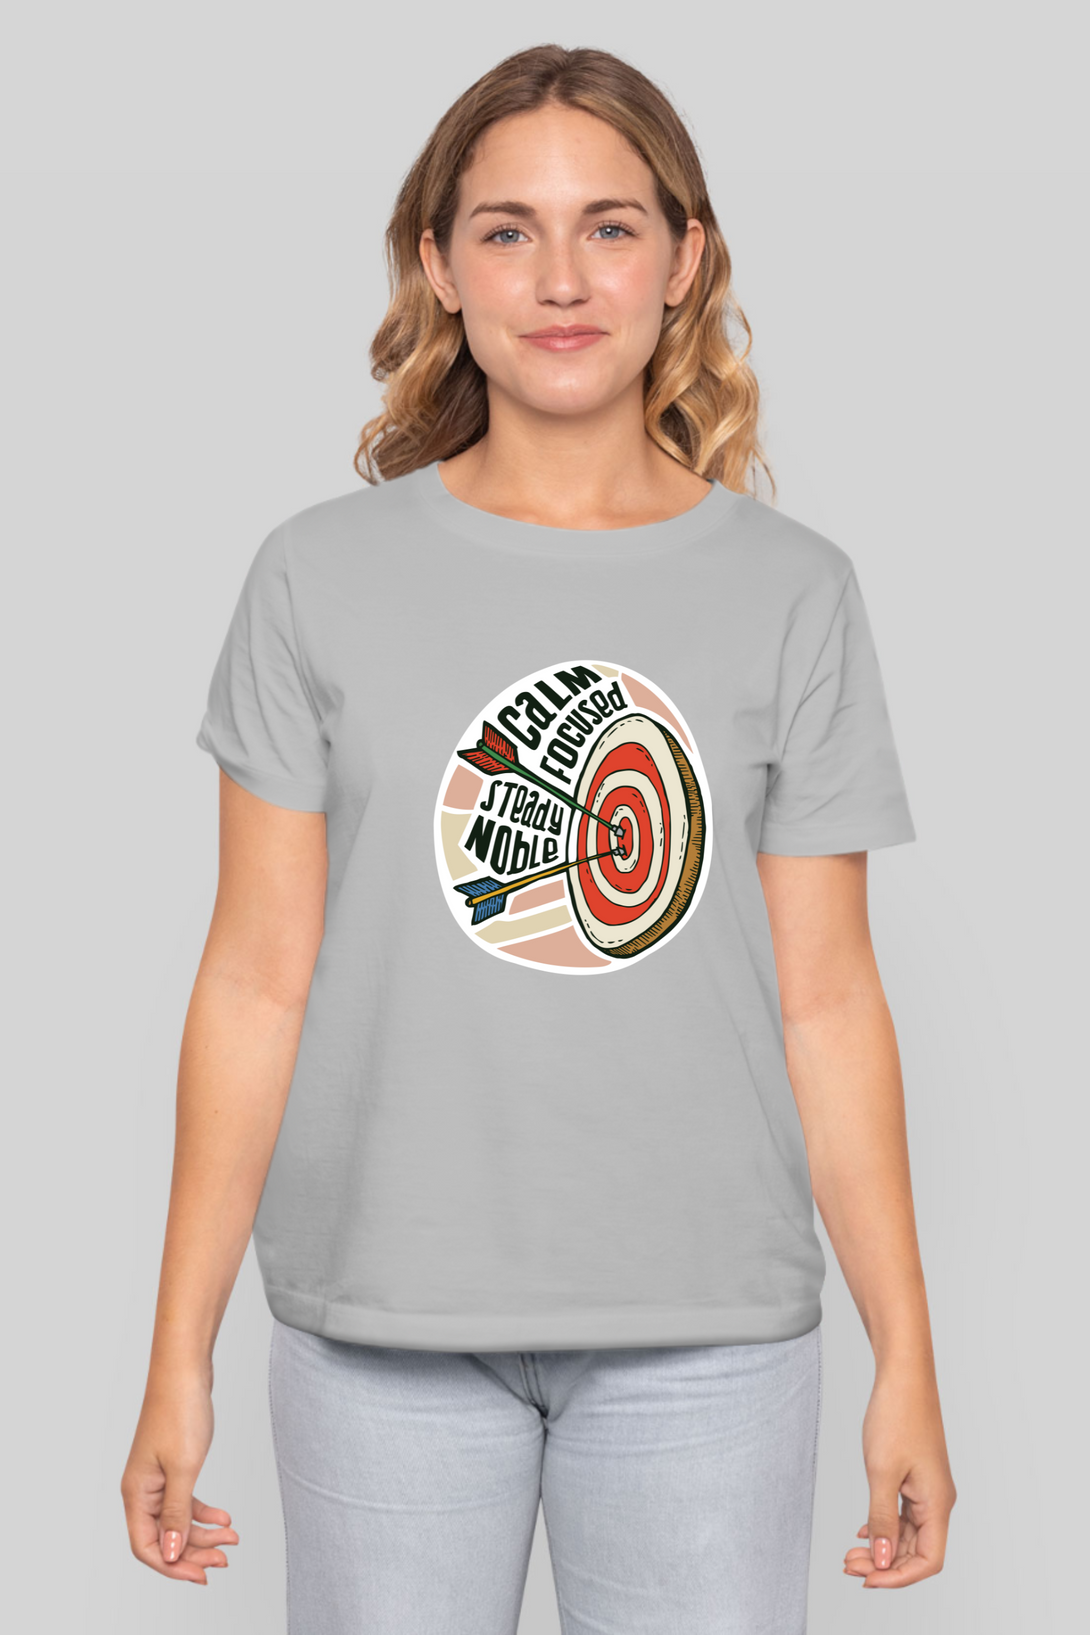 Bullseye Printed T-Shirt For Women - WowWaves - 10